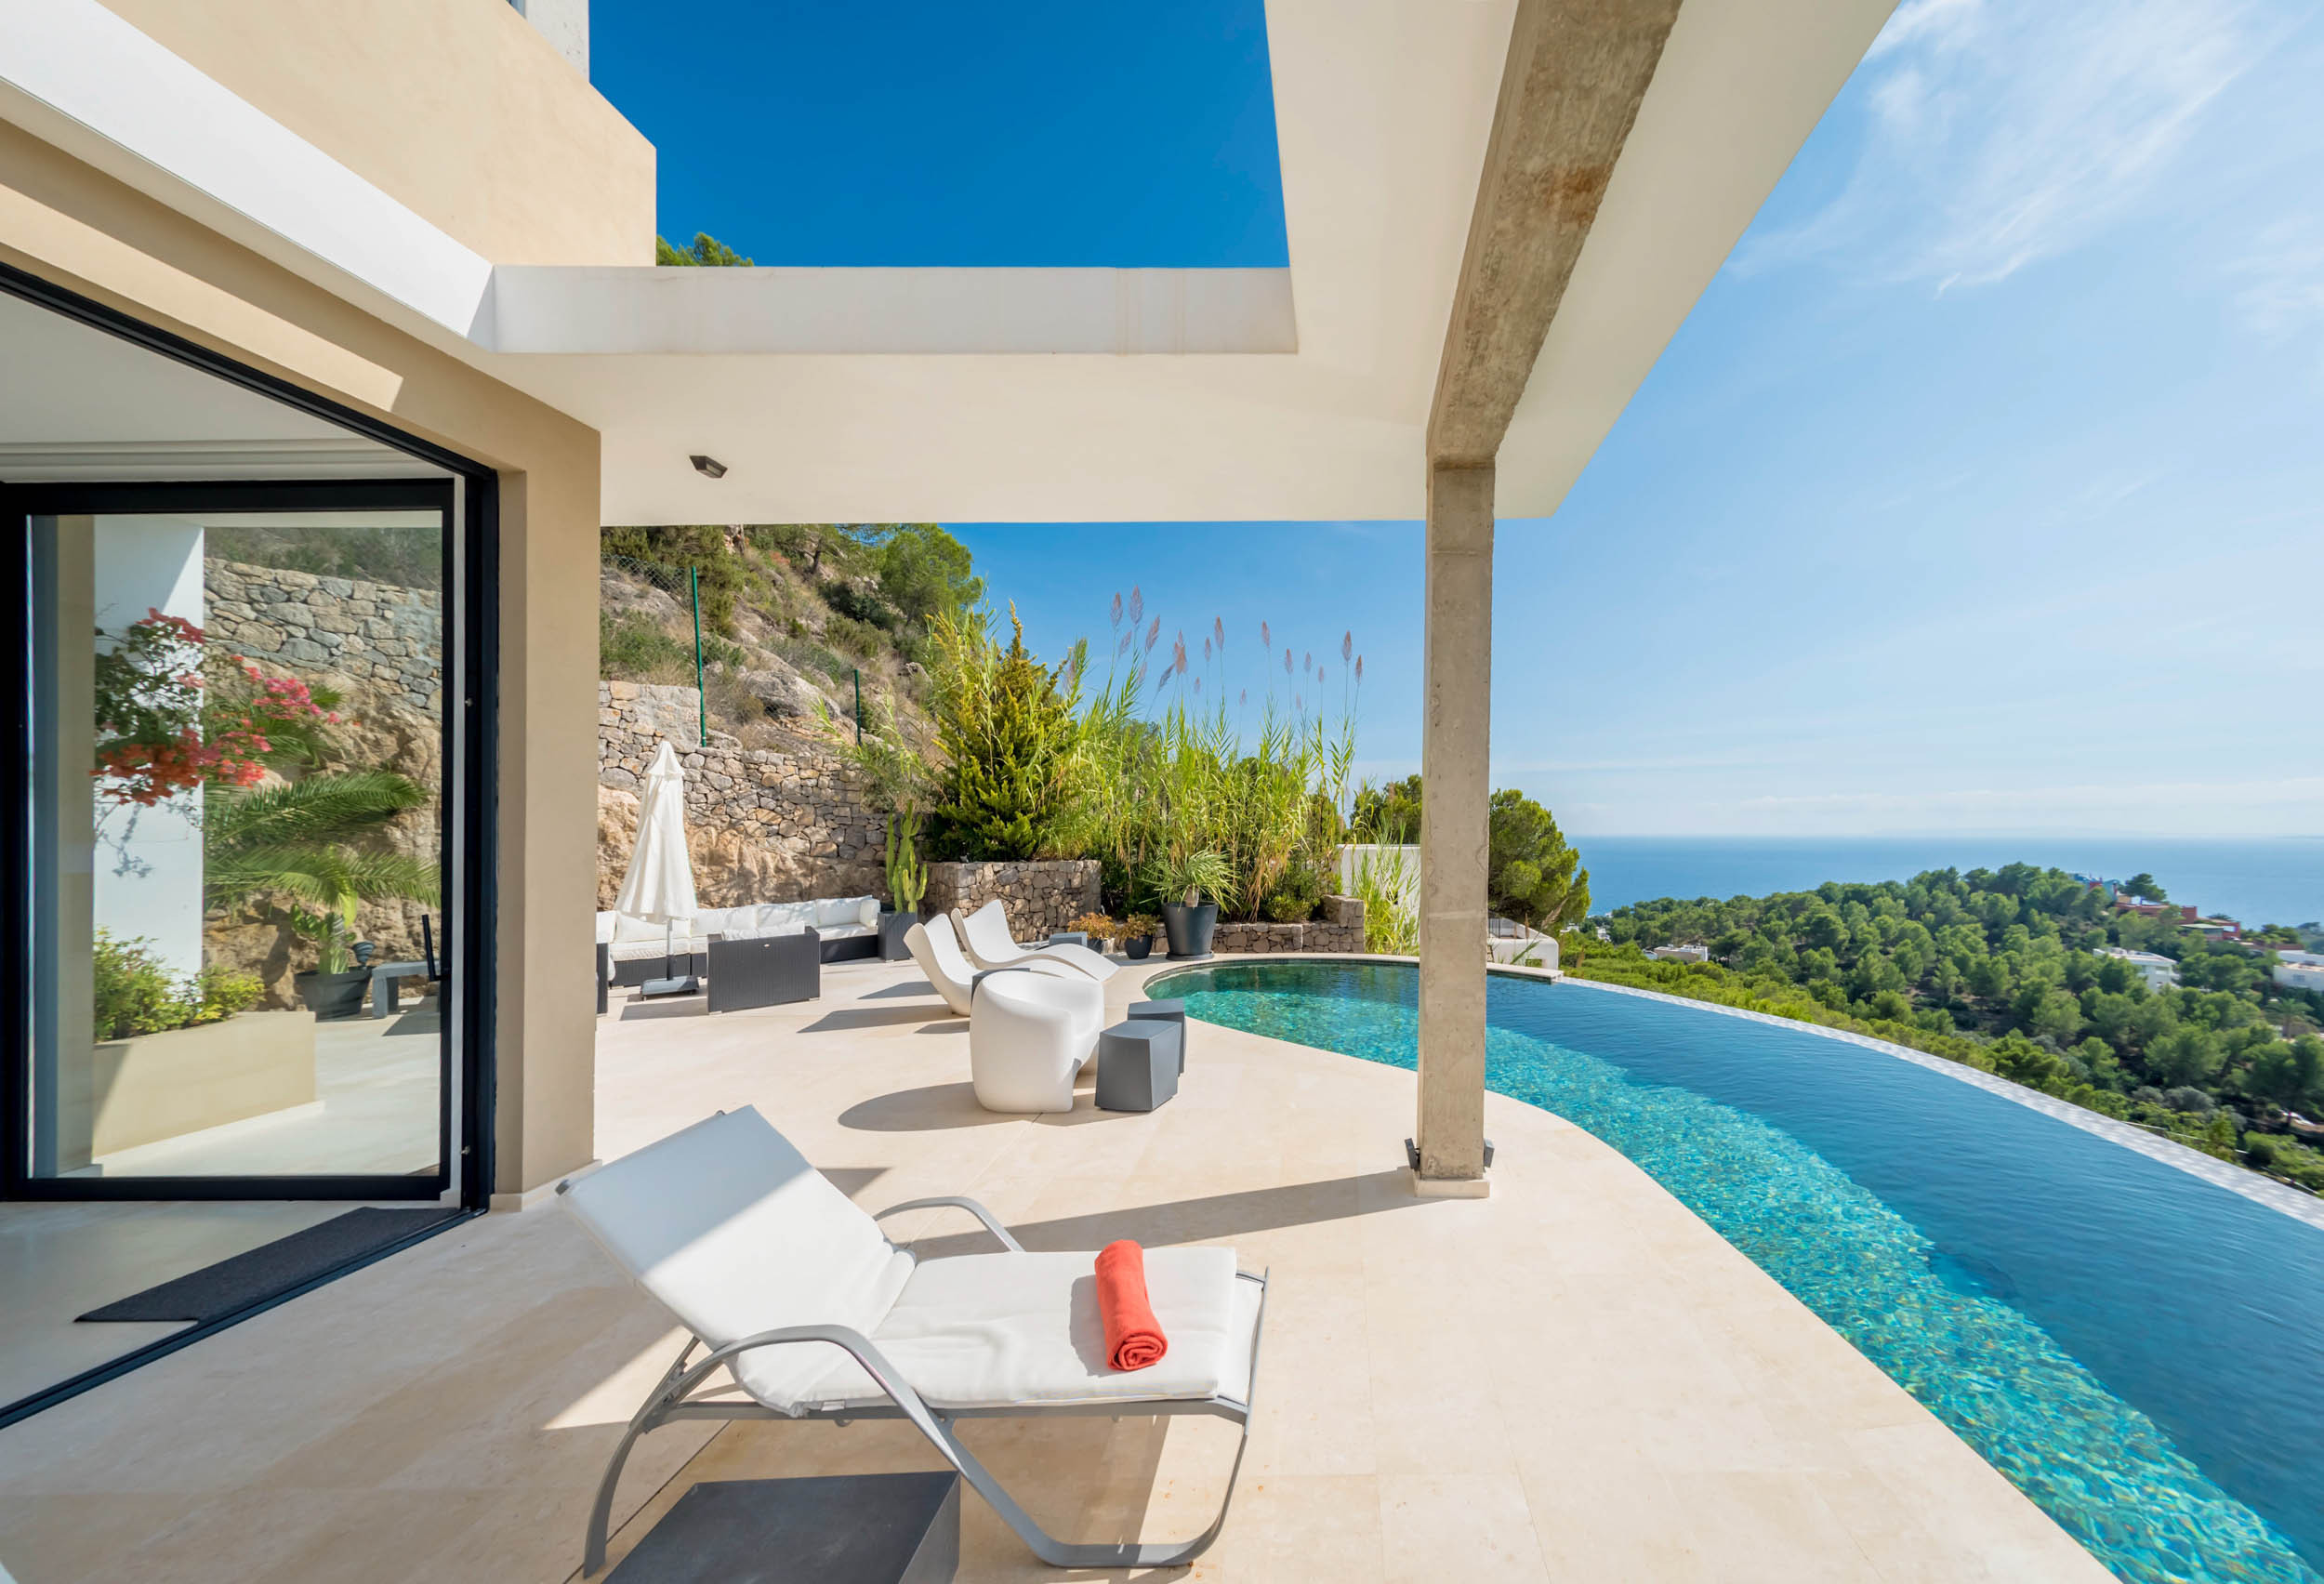 La piscine de la Hilltop Villa donne sur les plages d'Ibiza.